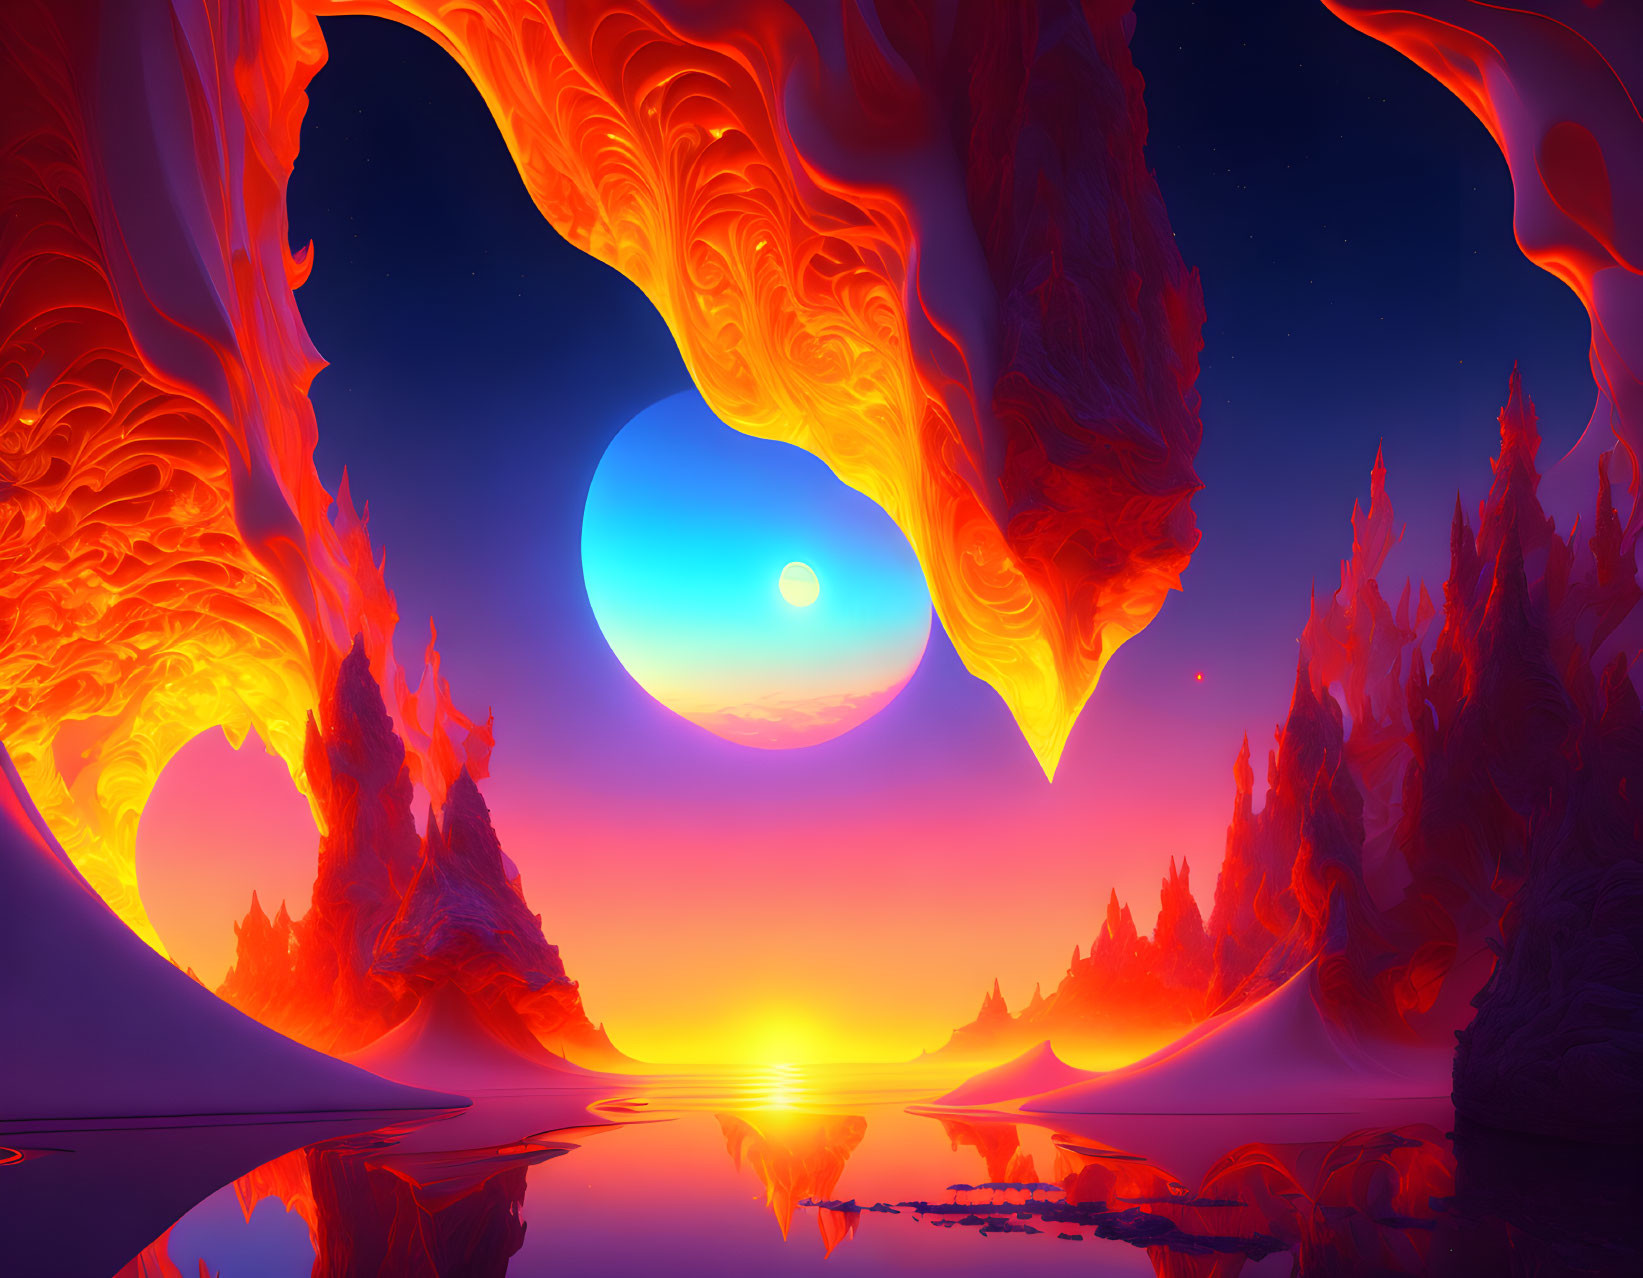 Surreal landscape digital artwork with orange flame-like formations